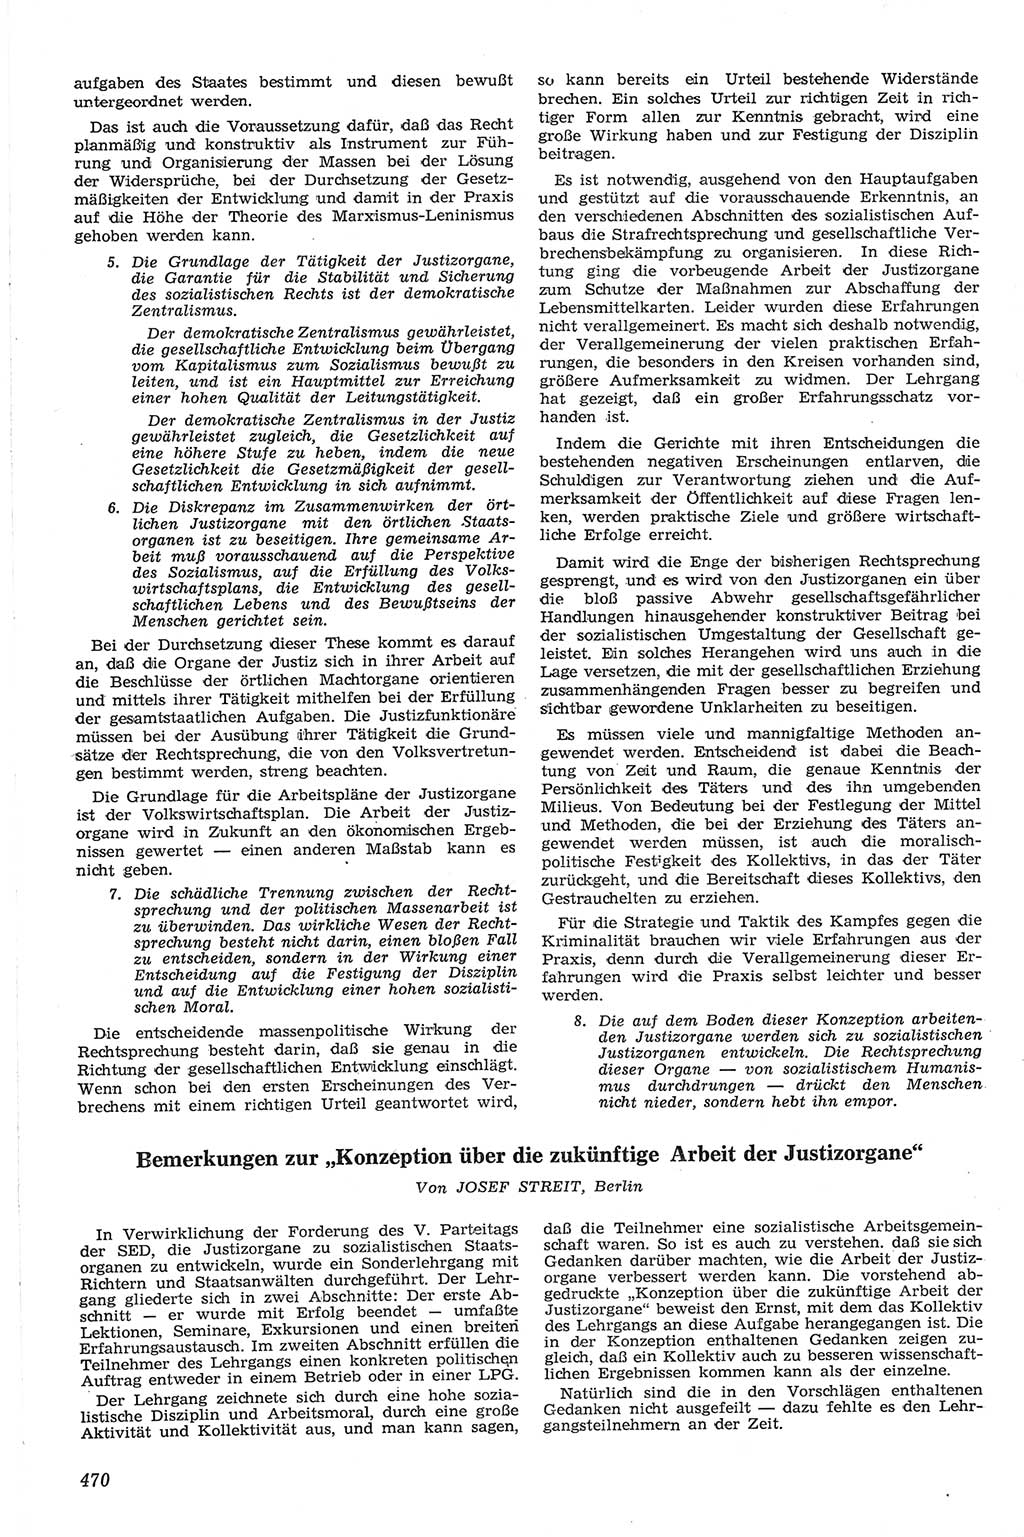 Neue Justiz (NJ), Zeitschrift für Recht und Rechtswissenschaft [Deutsche Demokratische Republik (DDR)], 13. Jahrgang 1959, Seite 470 (NJ DDR 1959, S. 470)